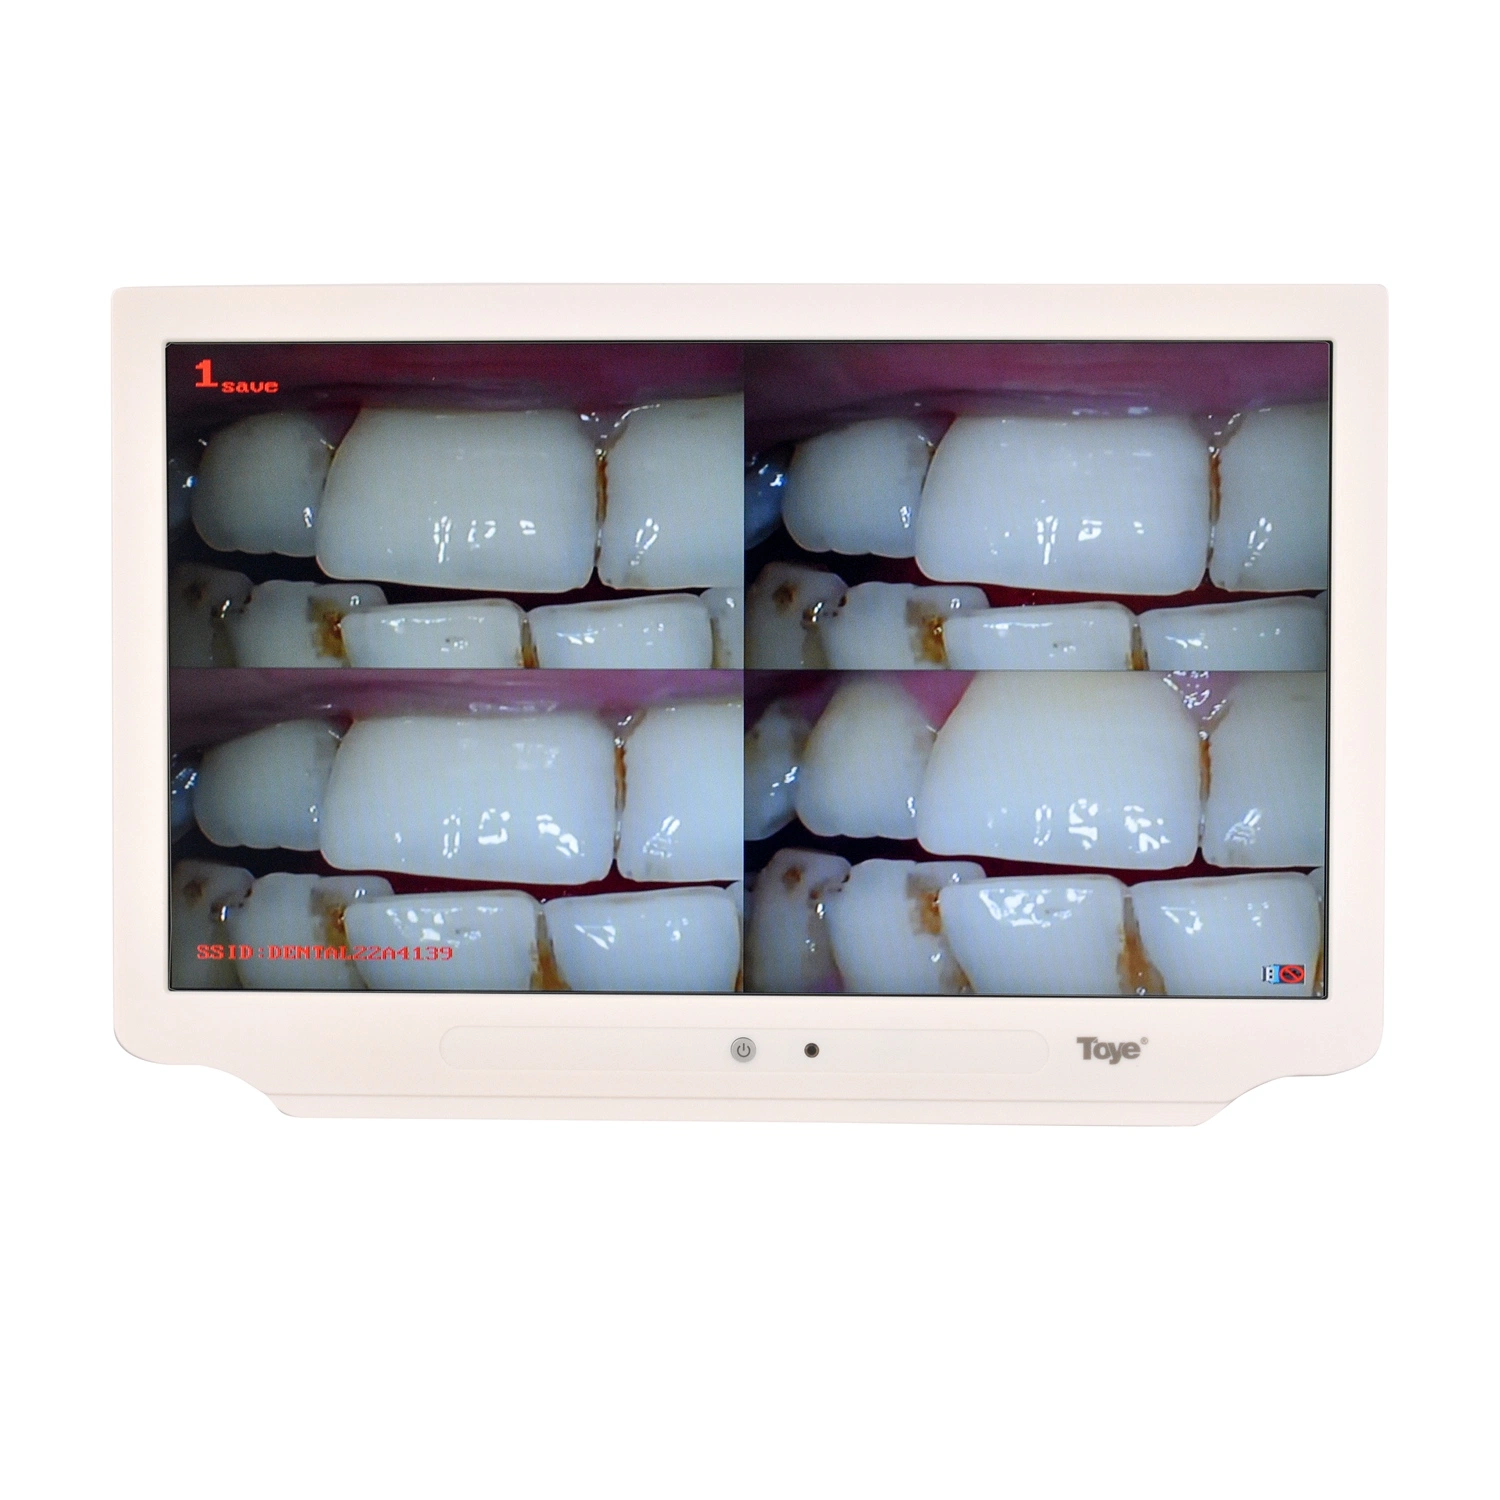 17дюйма ультратонких монитор 10 мегапикселей High Definition стоматологическая программа просмотра цифровых фотокамер перорального камеры устные камера с мультимедиа